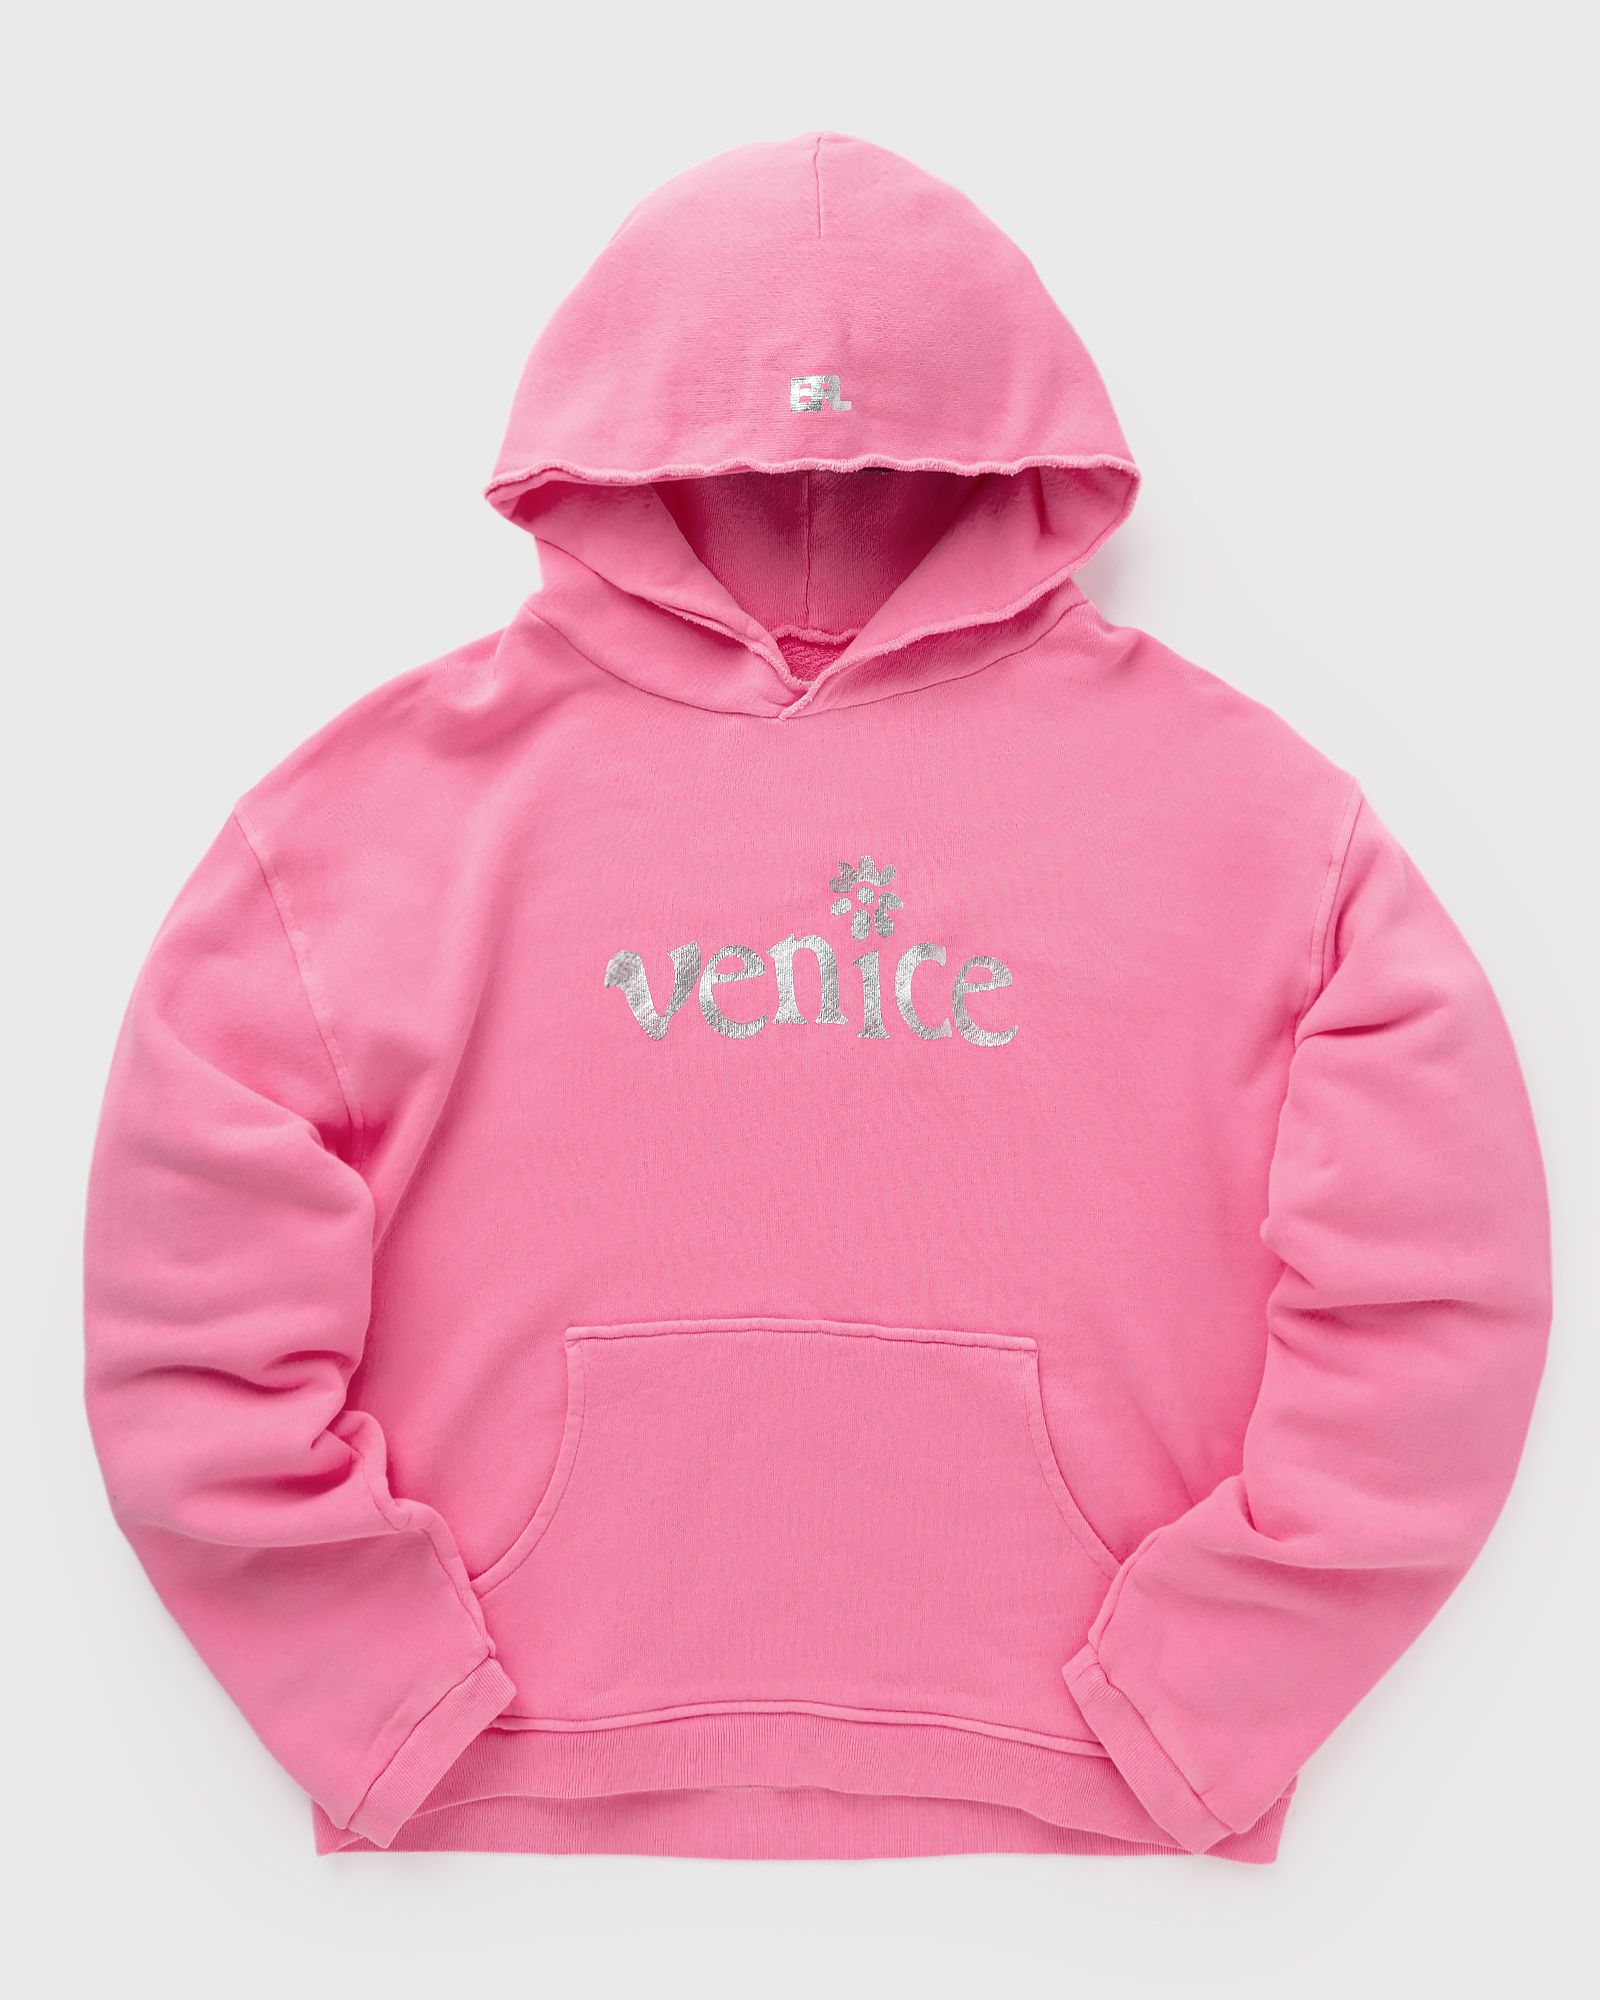 ERL - silver printed venice hoodie knit men hoodies pink in größe:xl